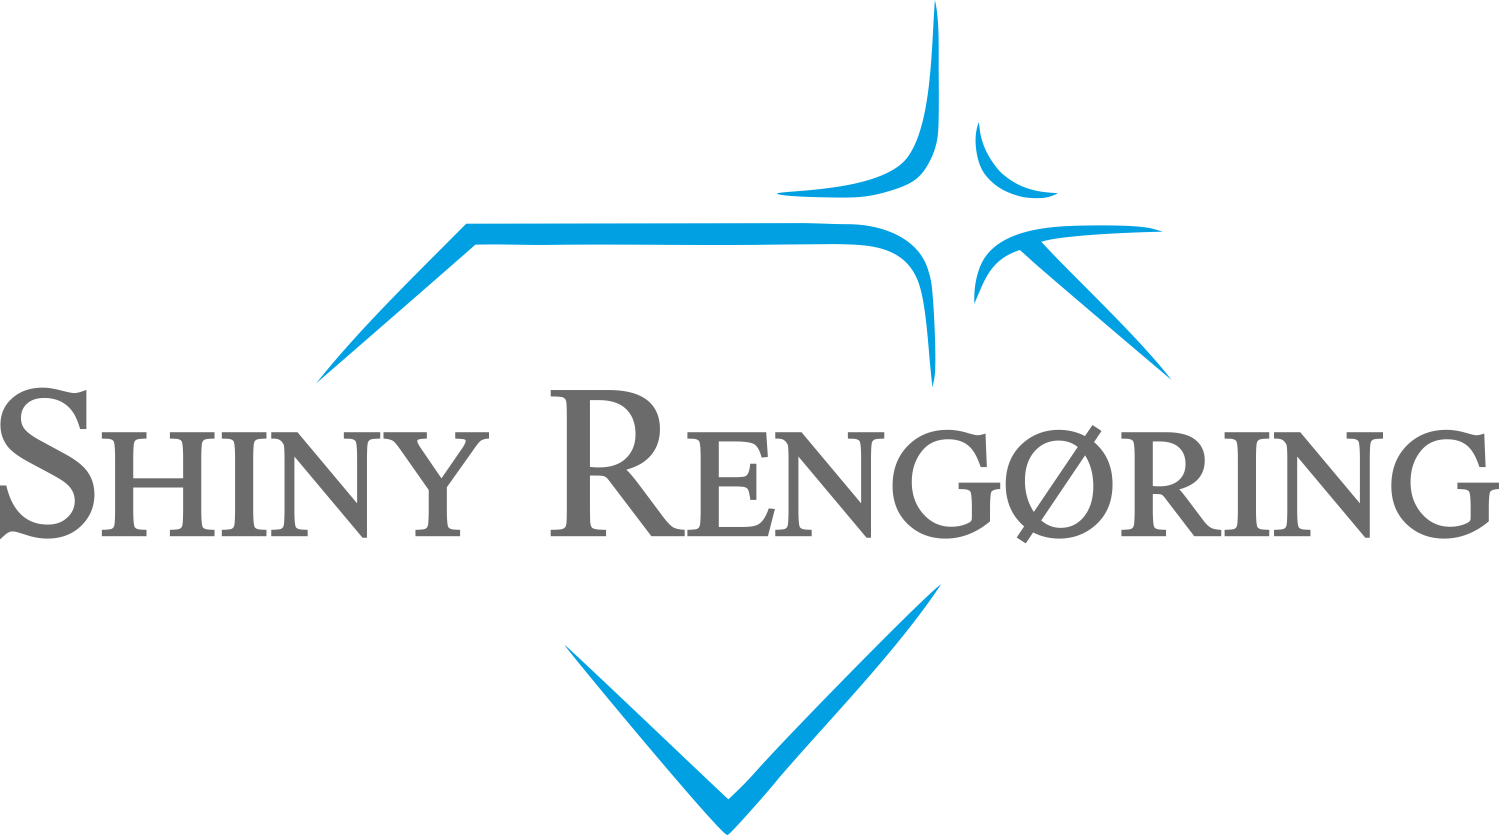 shiny rengoring denmark logo